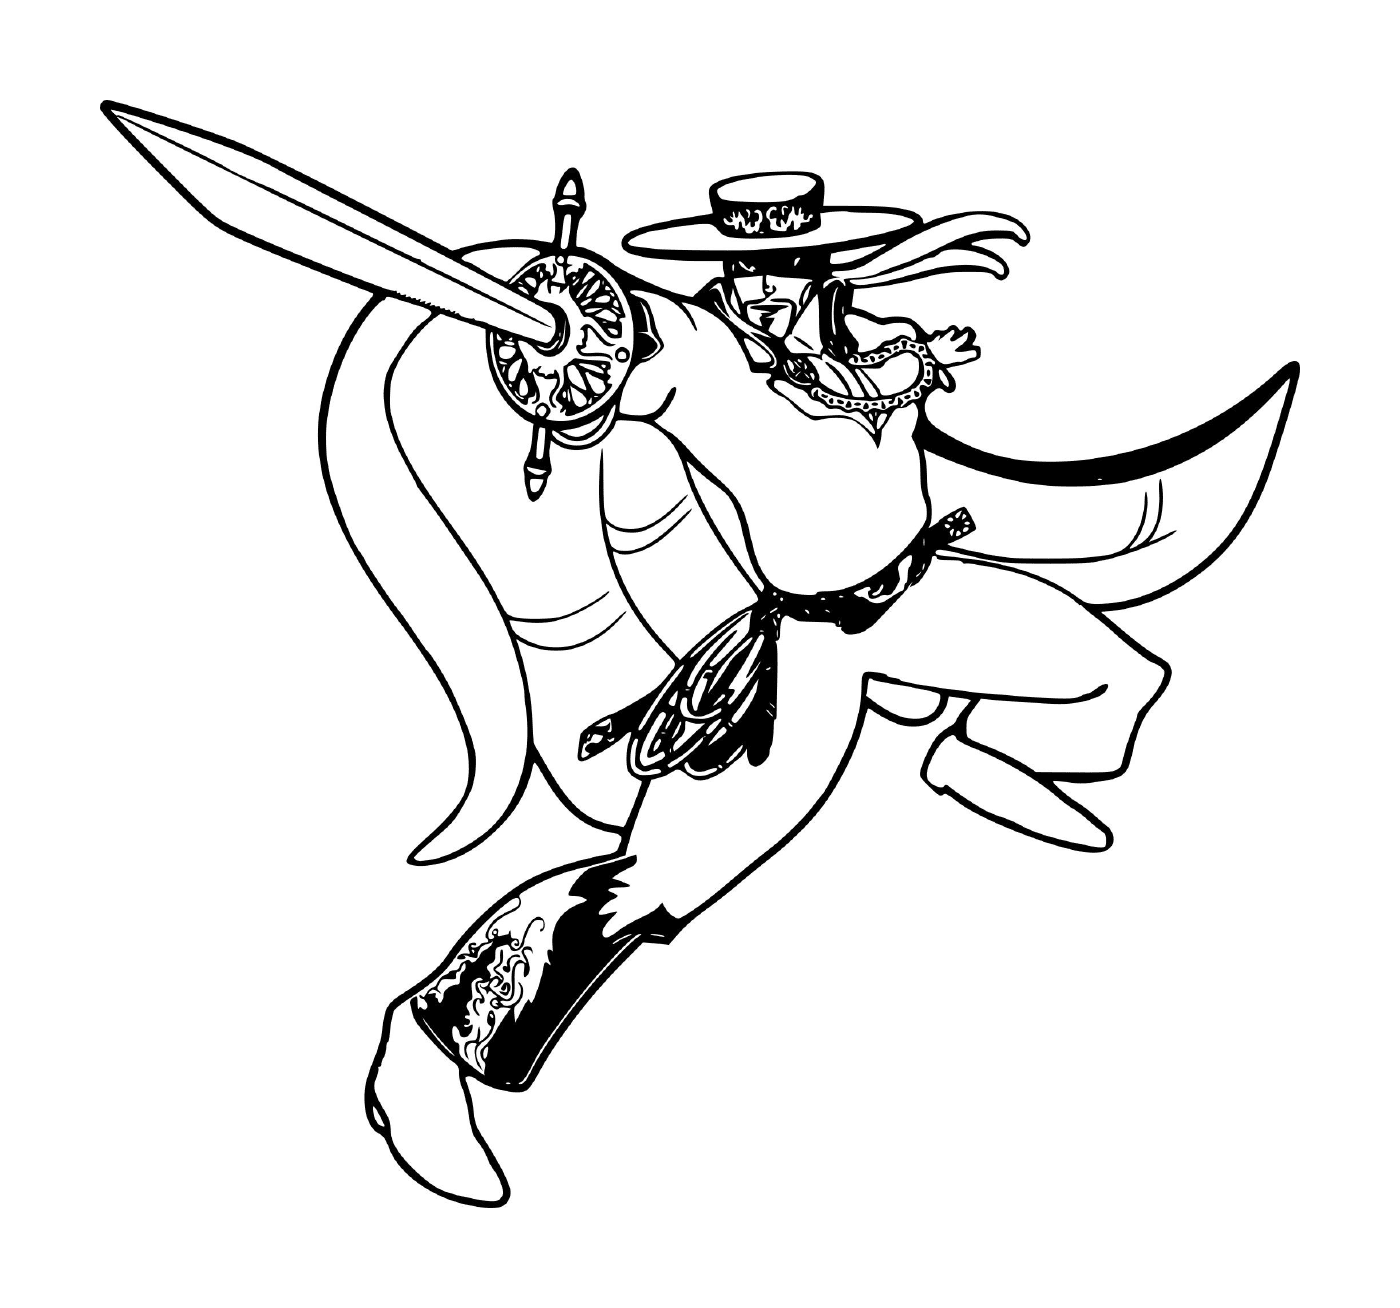  Zorro el zorro justiciero enmascarado sosteniendo una espada 